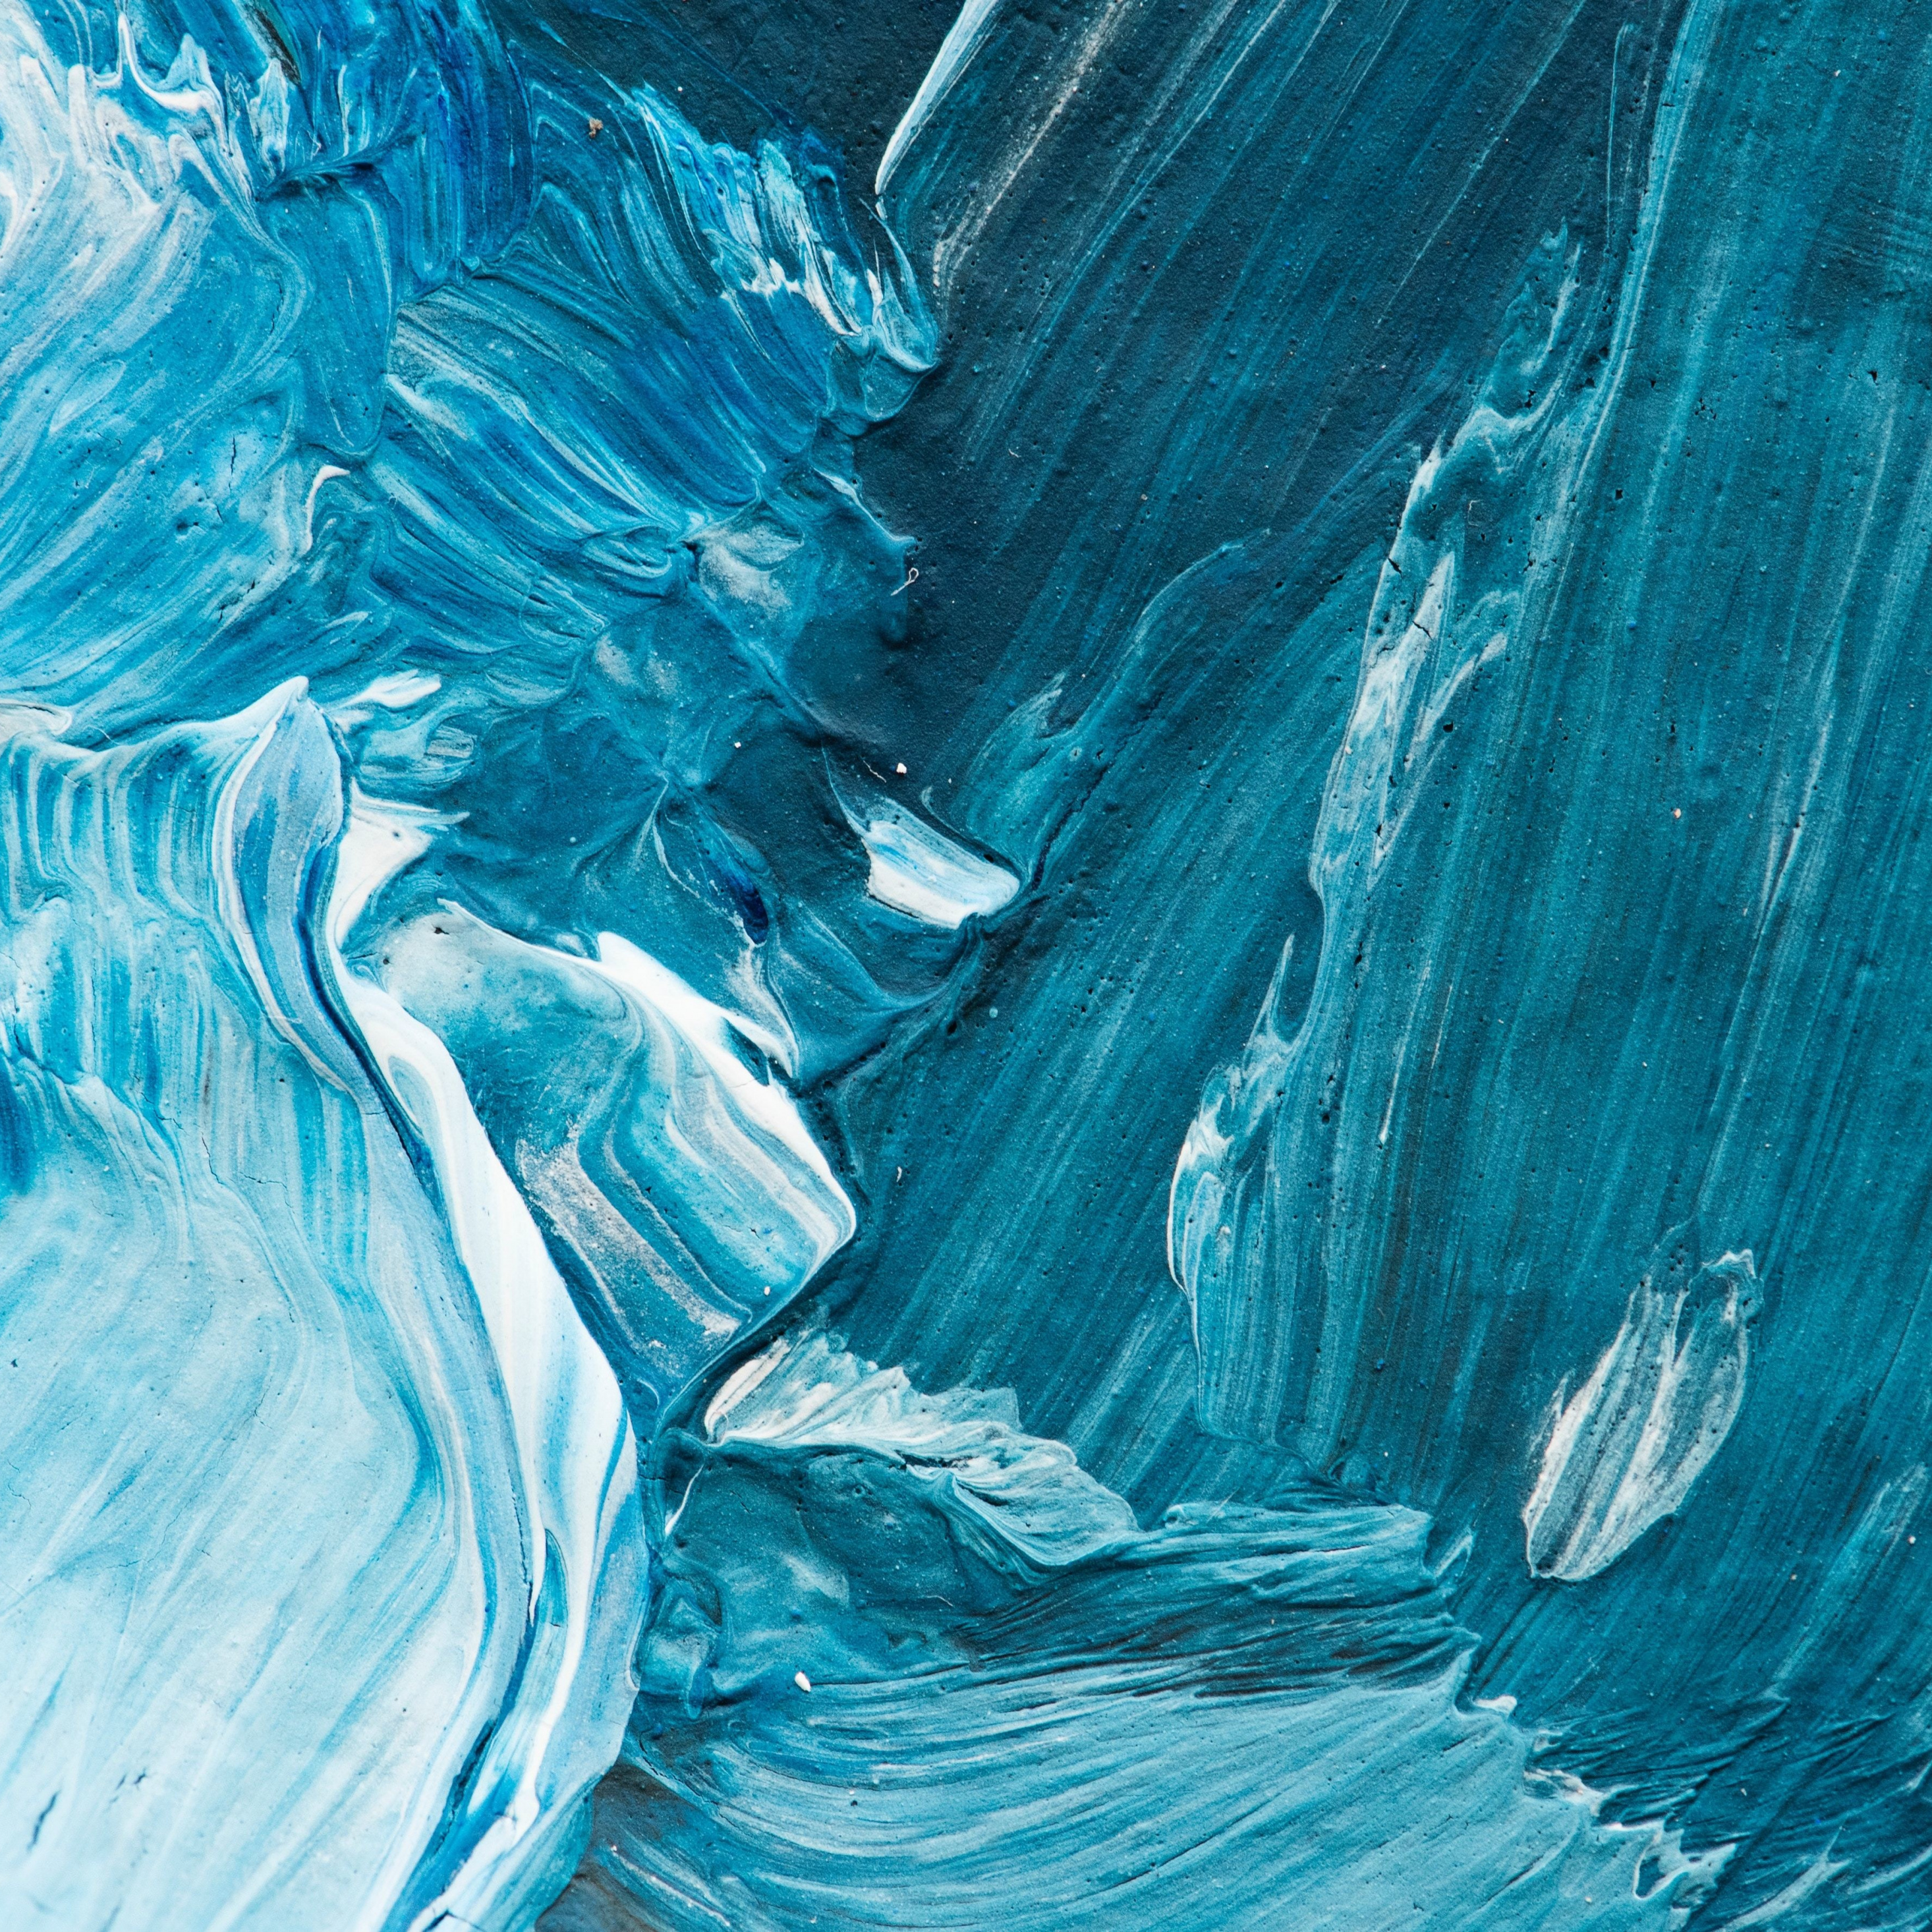 papier peint aquarelle,l'eau,bleu,aqua,grotte de glace,peinture acrylique